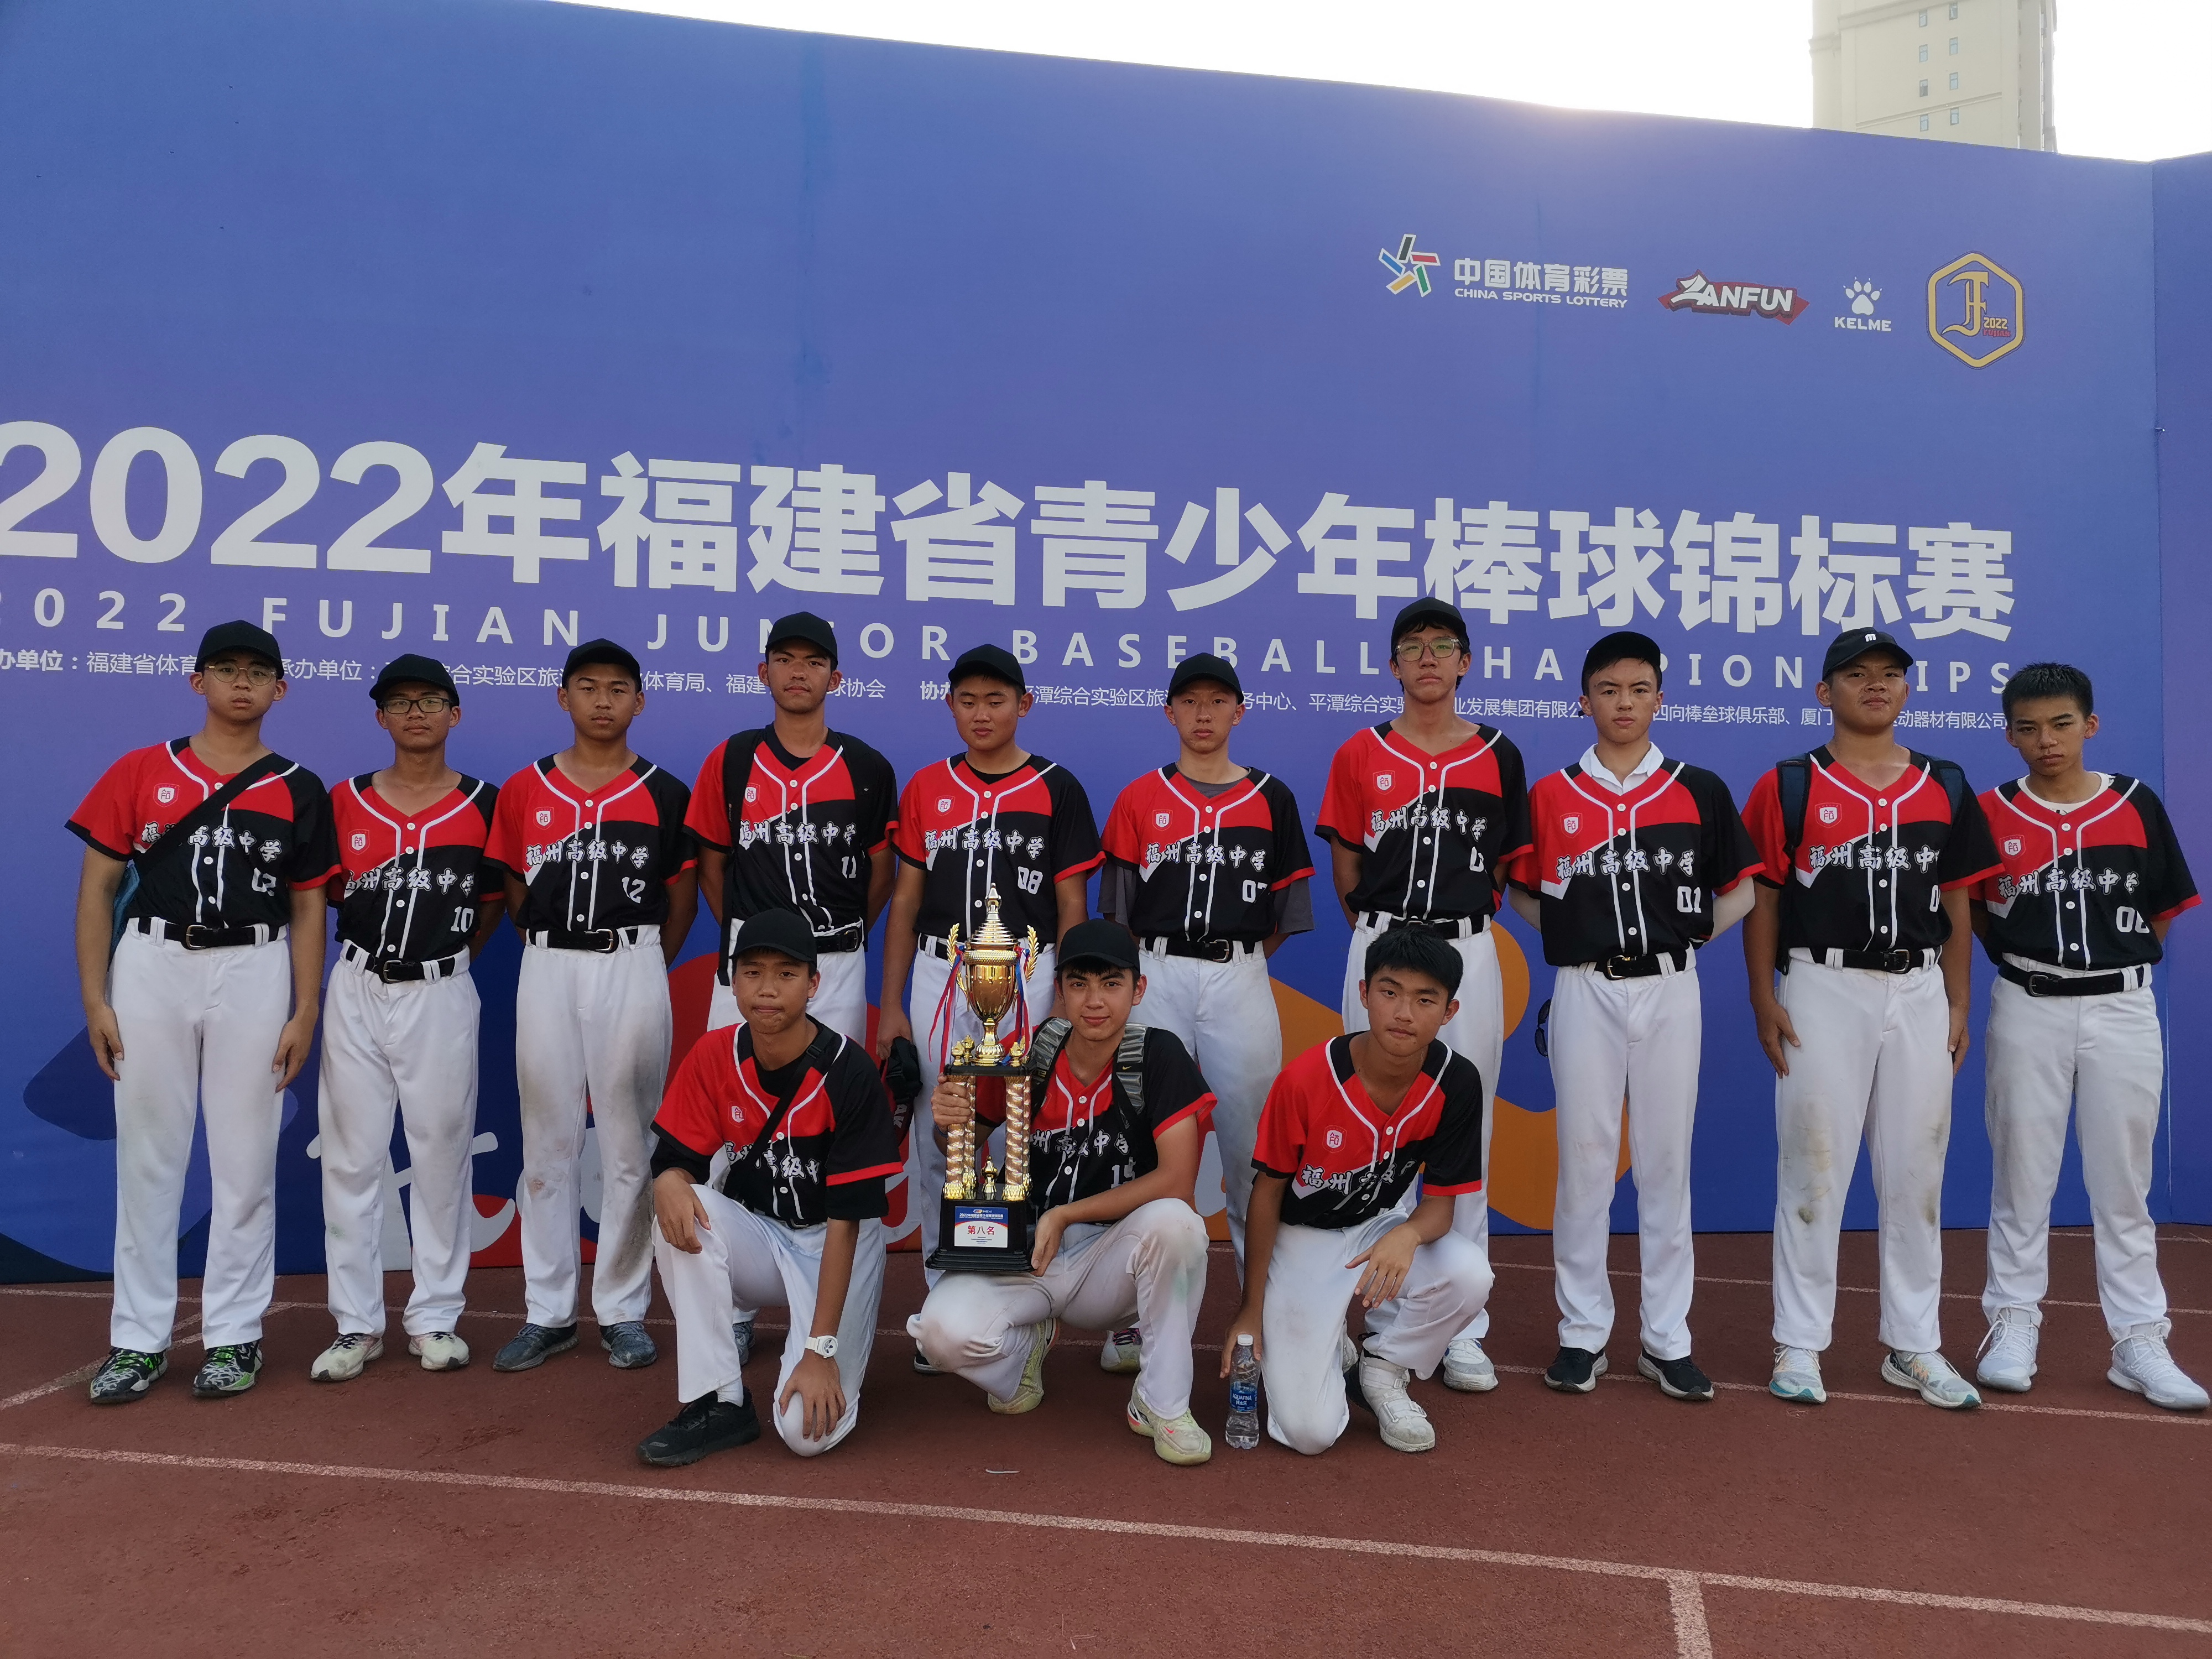 我校獲得2022年福建省青少年棒球錦標賽第八名